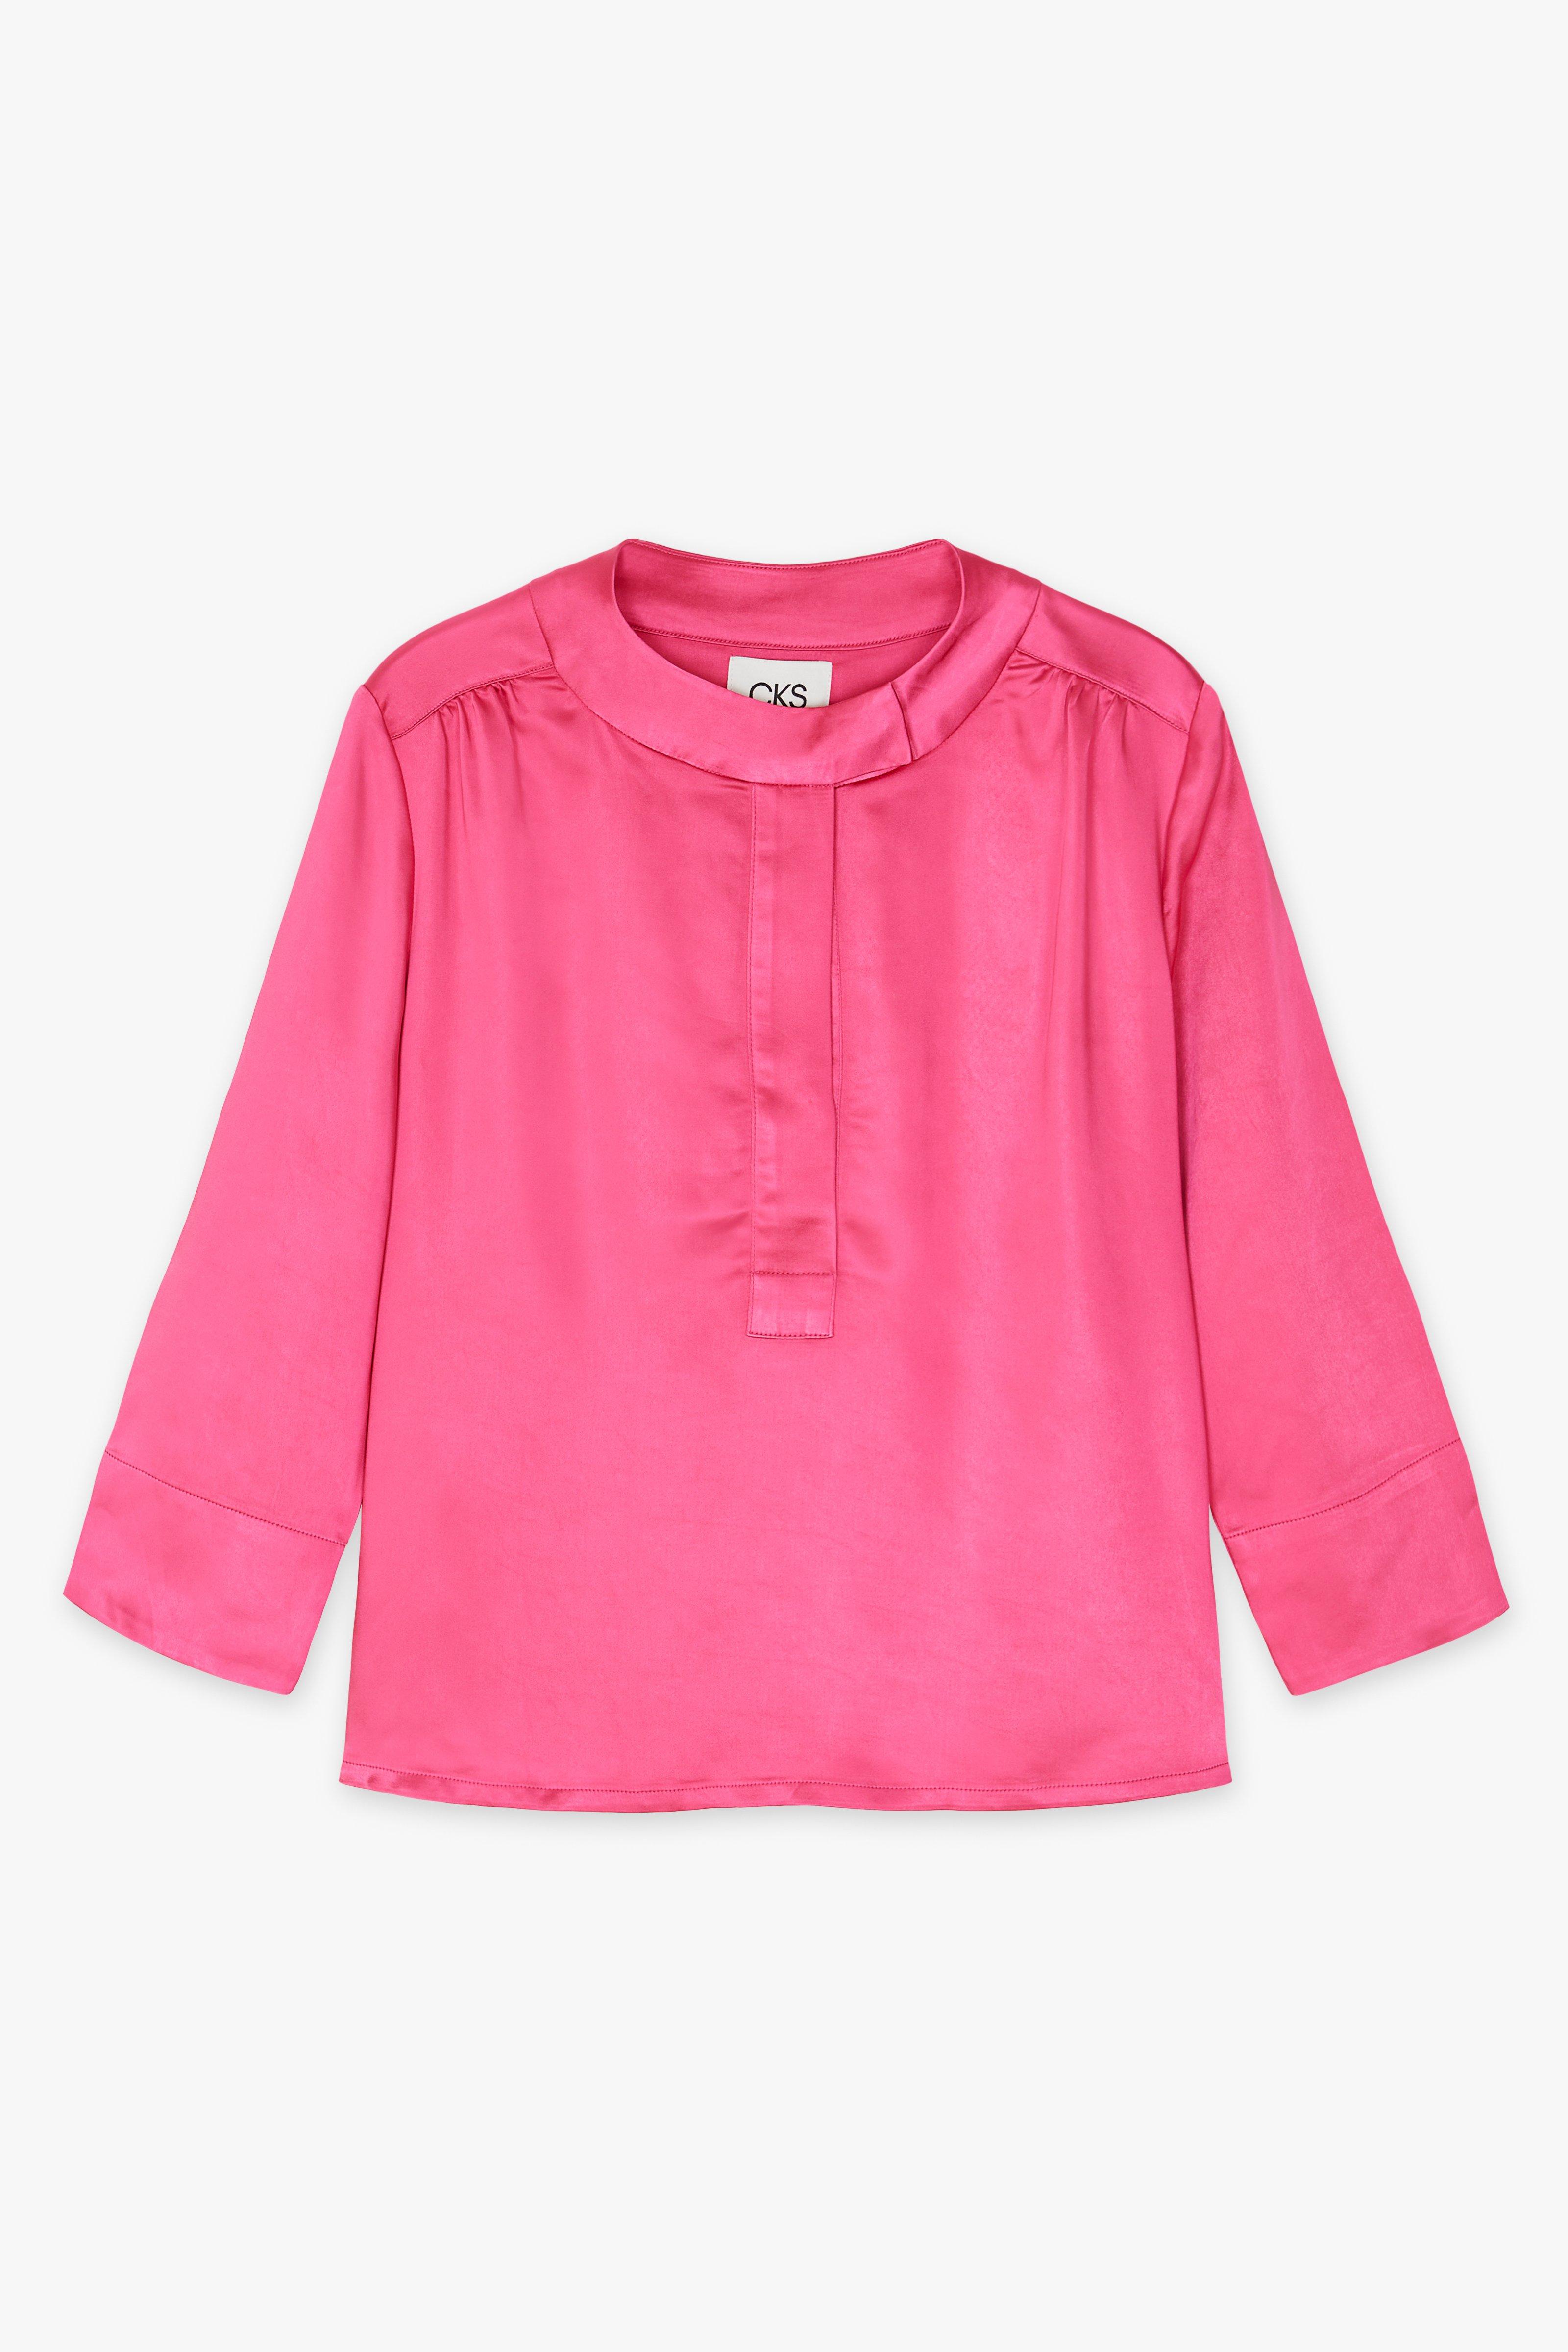 CKS Dames - LAREDINO - blouse short sleeves - pink